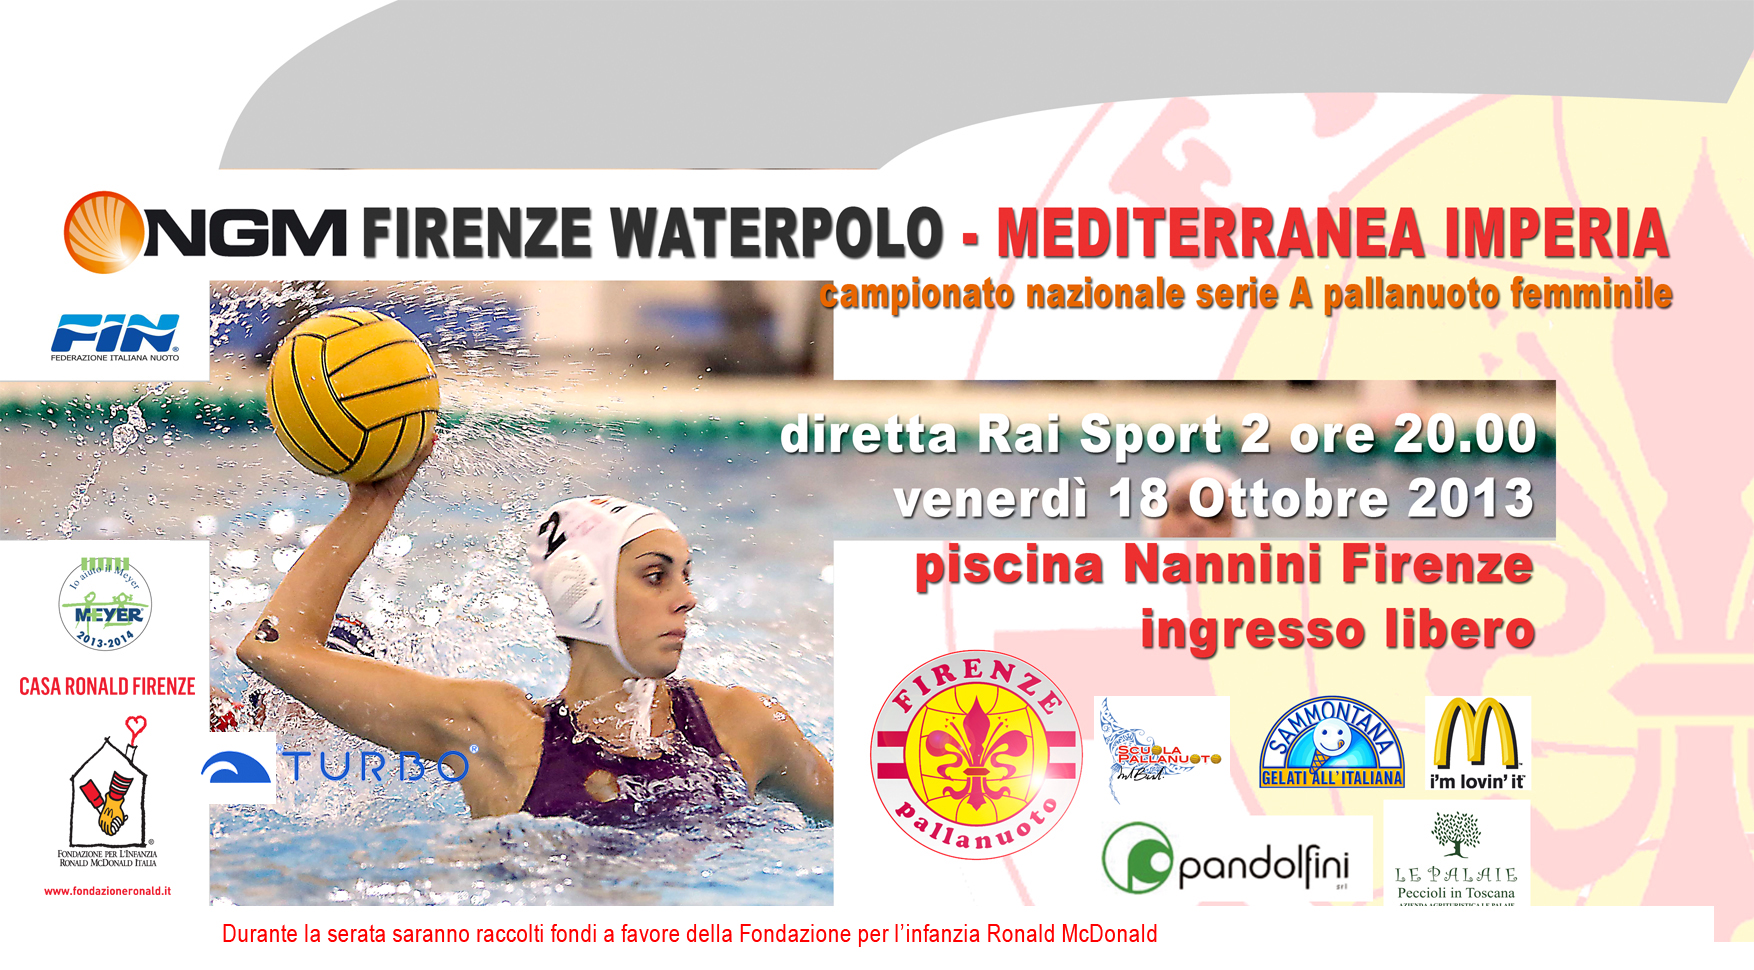 NGM Firenze Waterpolo-Mediterranea Imperia